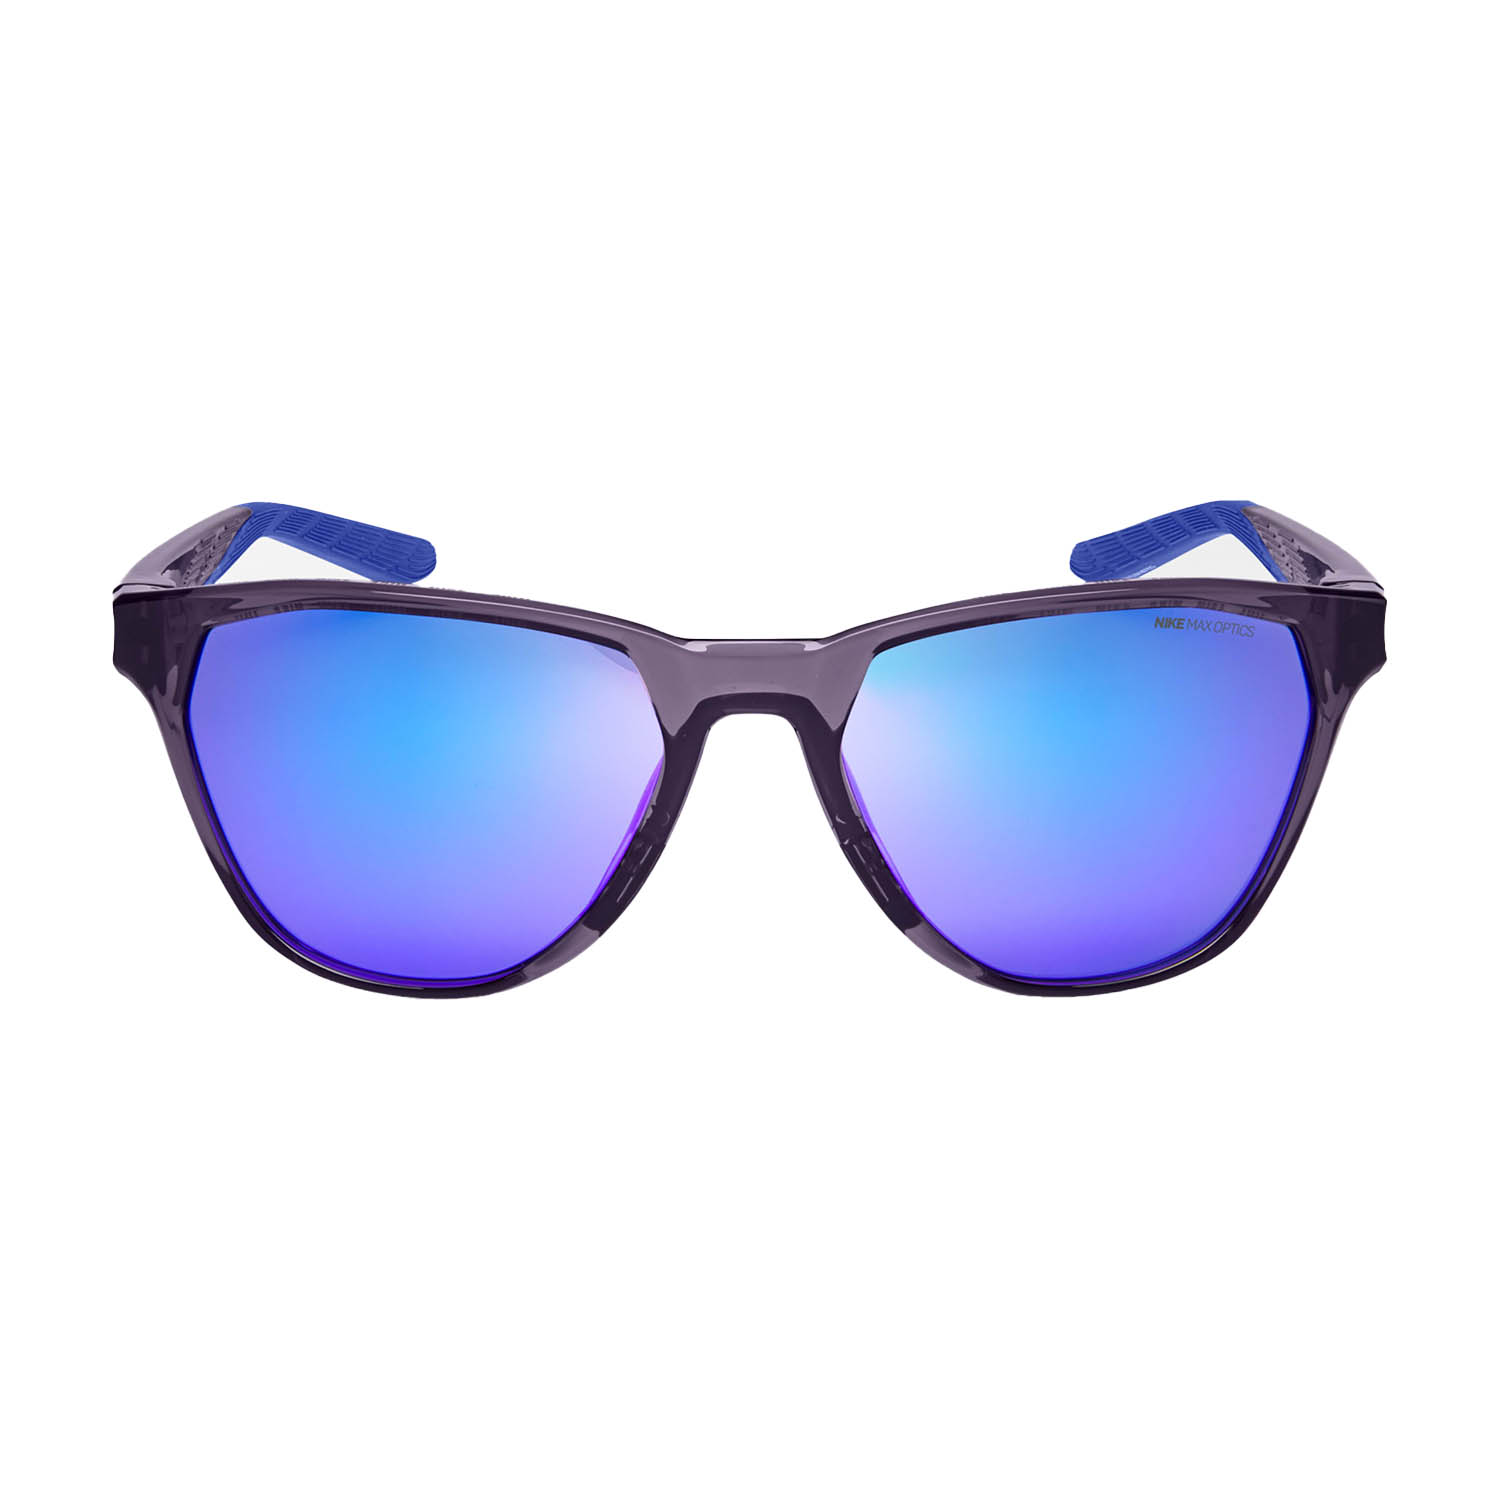 Nike Maverick Rise Sunglasses - Canon Purple/Grey/Violet